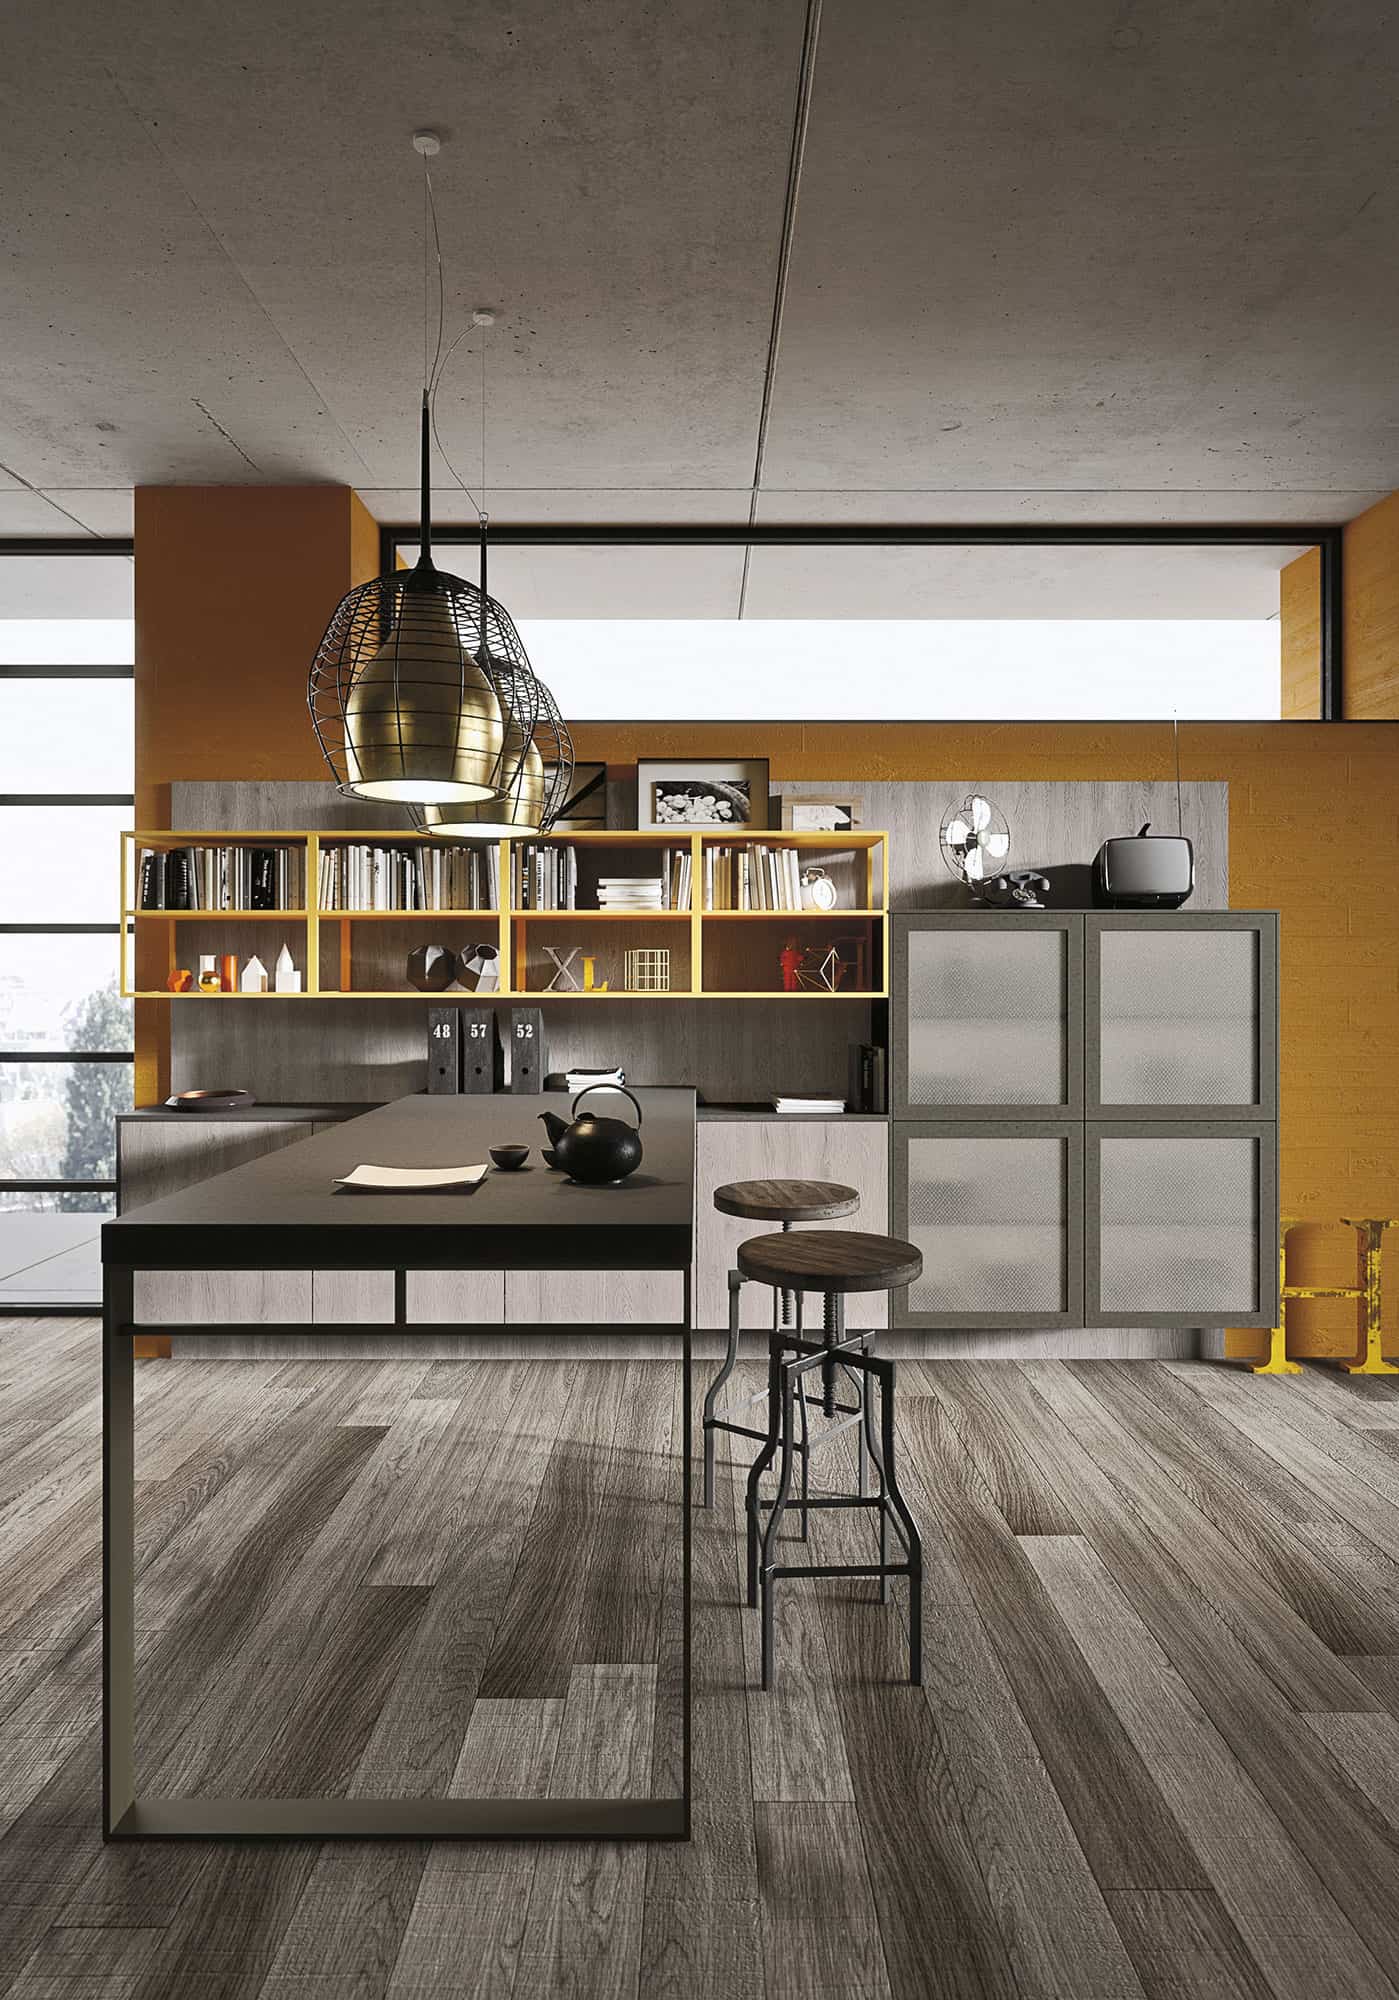 21 kitchen design lofts 3 urban ideas snaidero